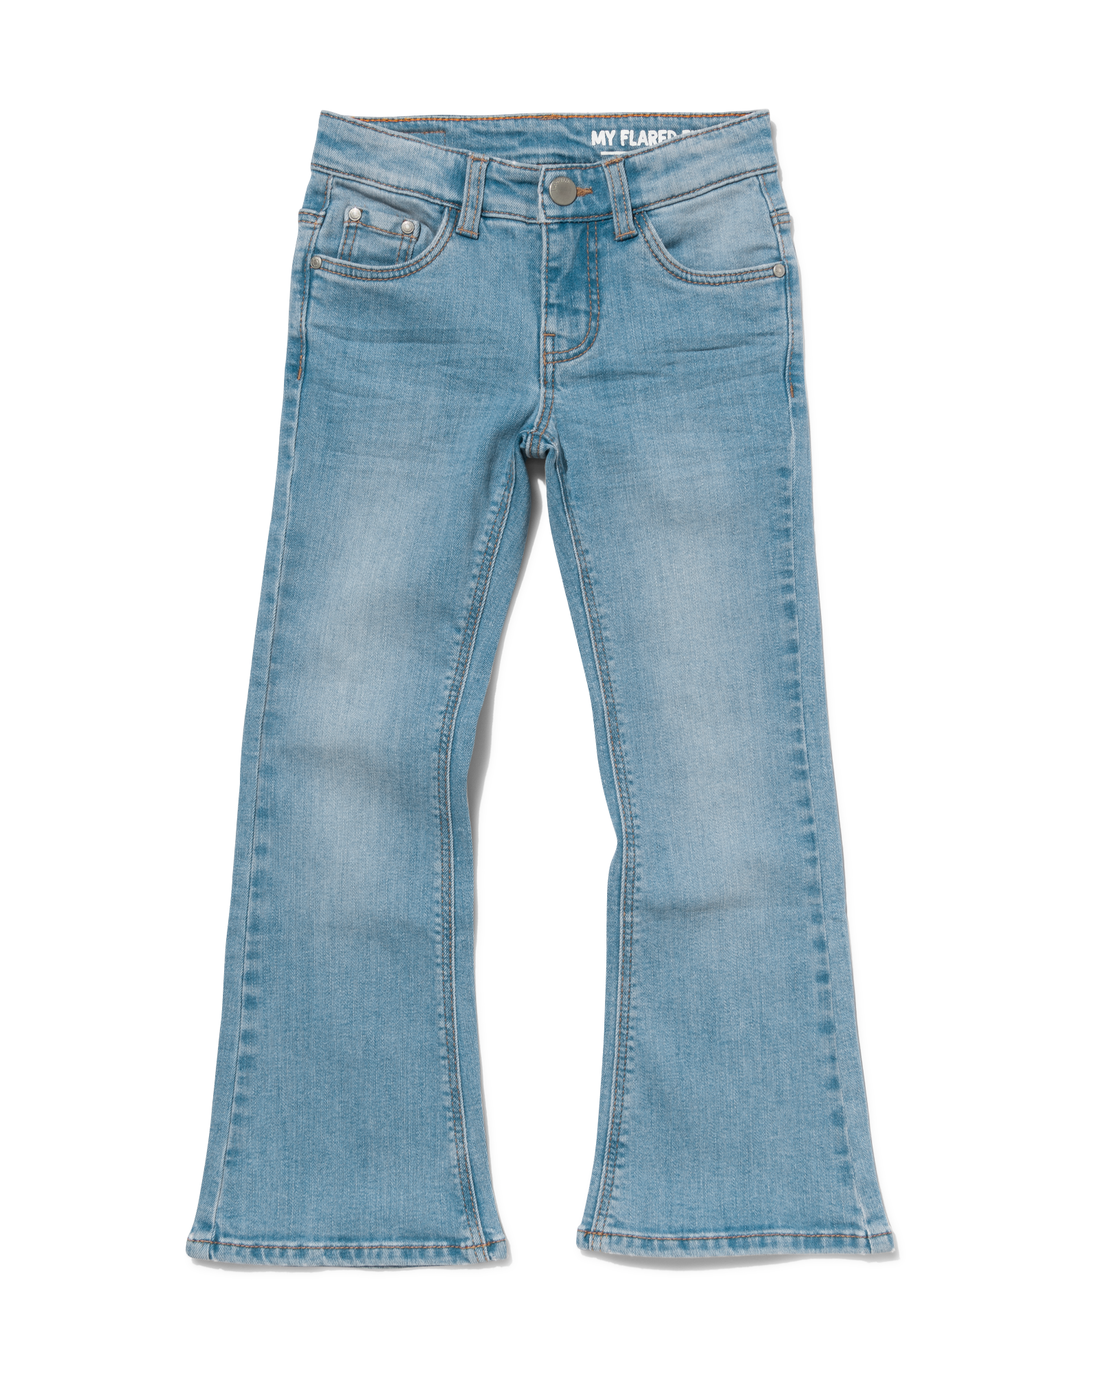 HEMA Kinder Jeans Flared Lichtblauw (lichtblauw)